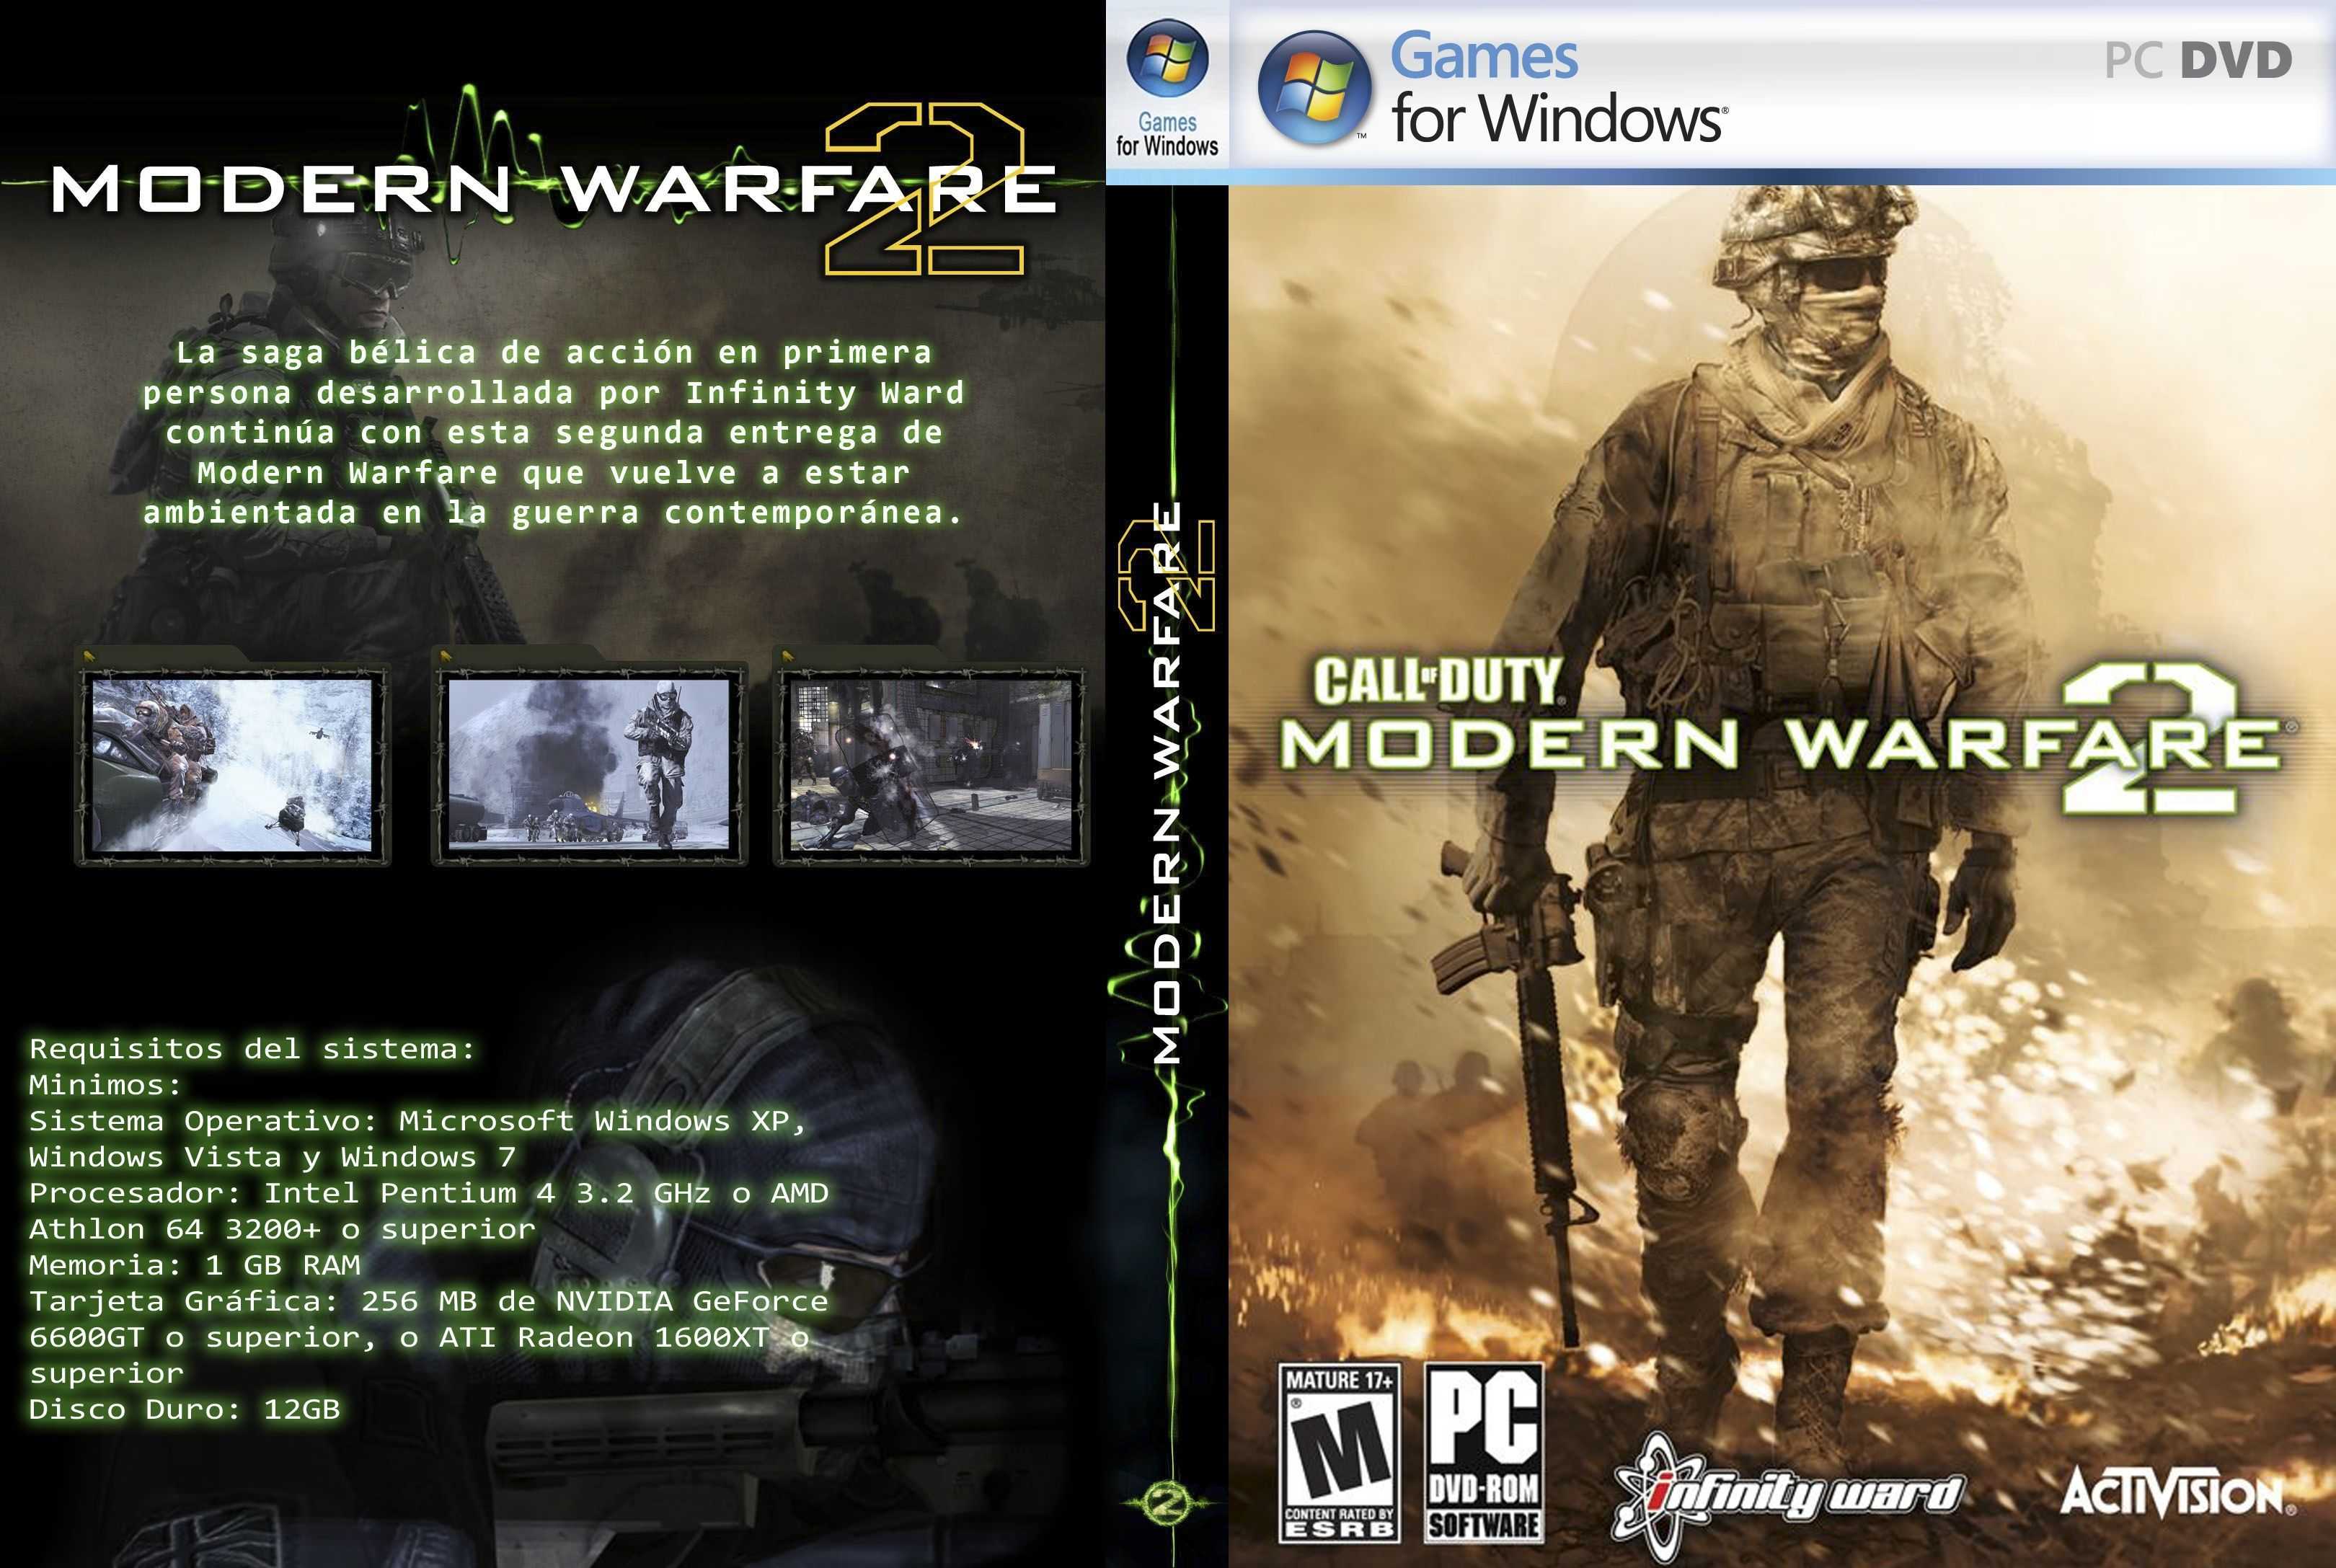 операционная система windows 8 не поддерживается игрой call of duty modern warfare 2 фото 55